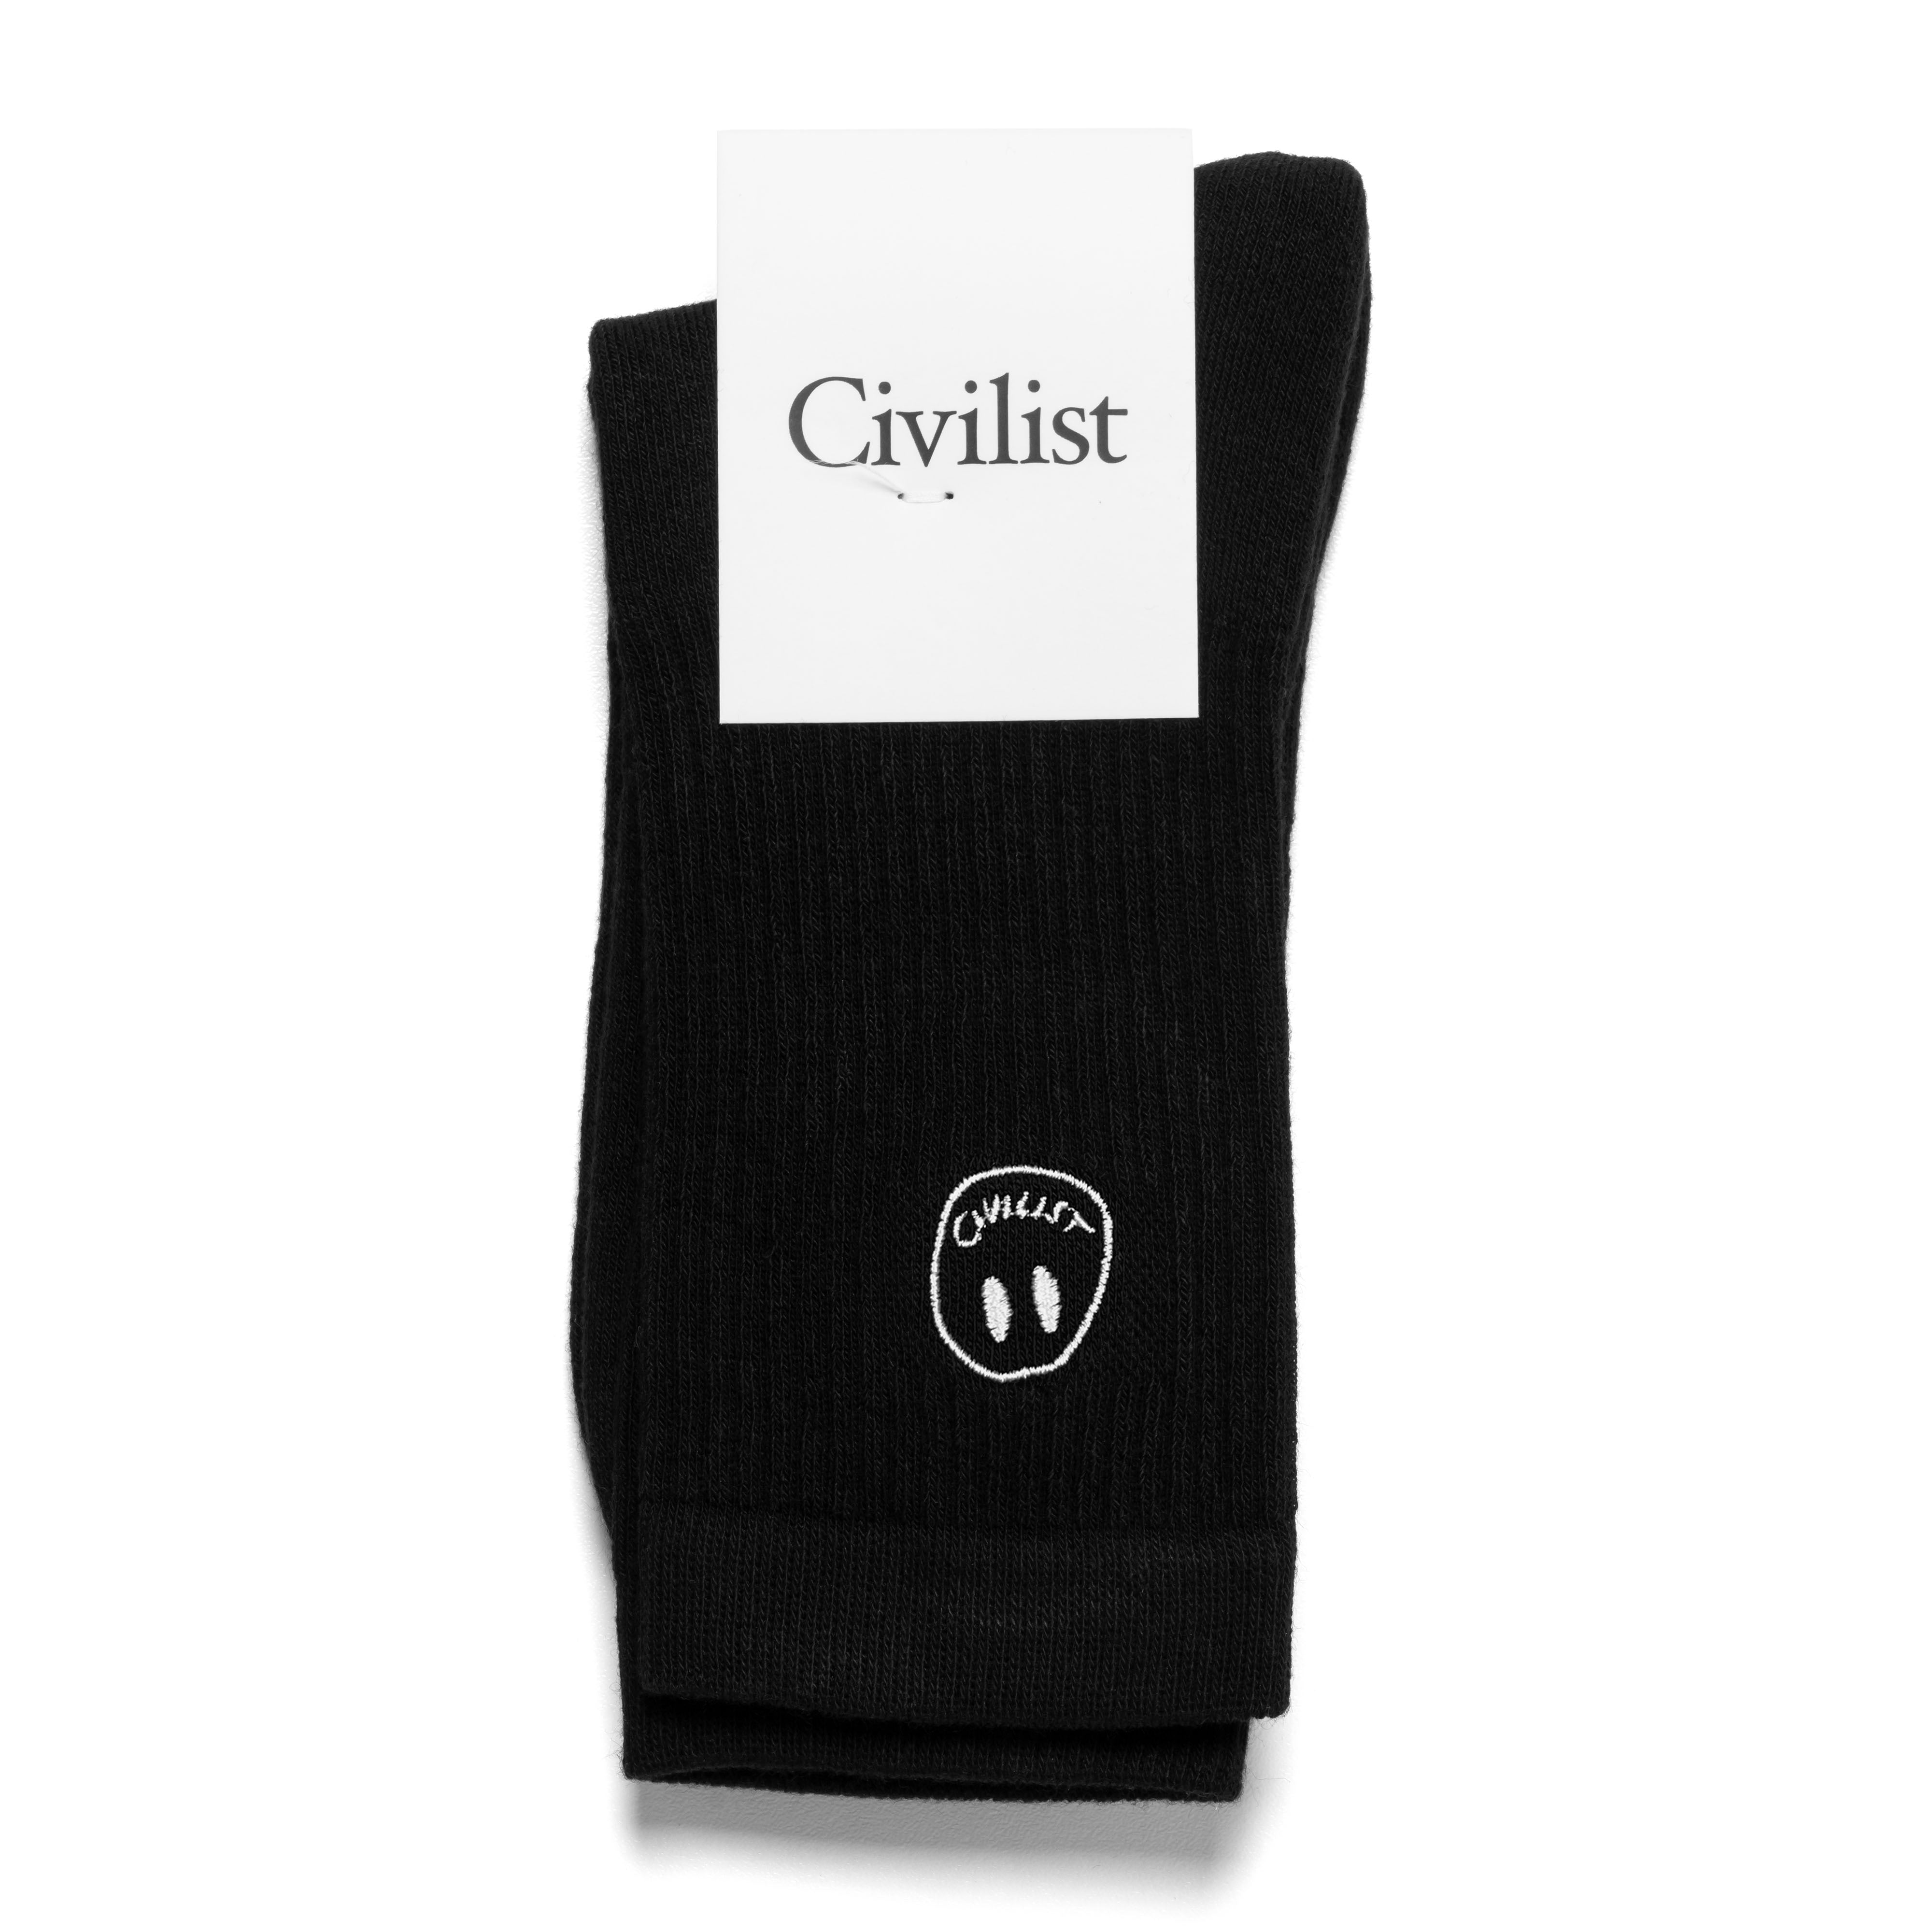 Civilist Mono Smiler Socks - Black